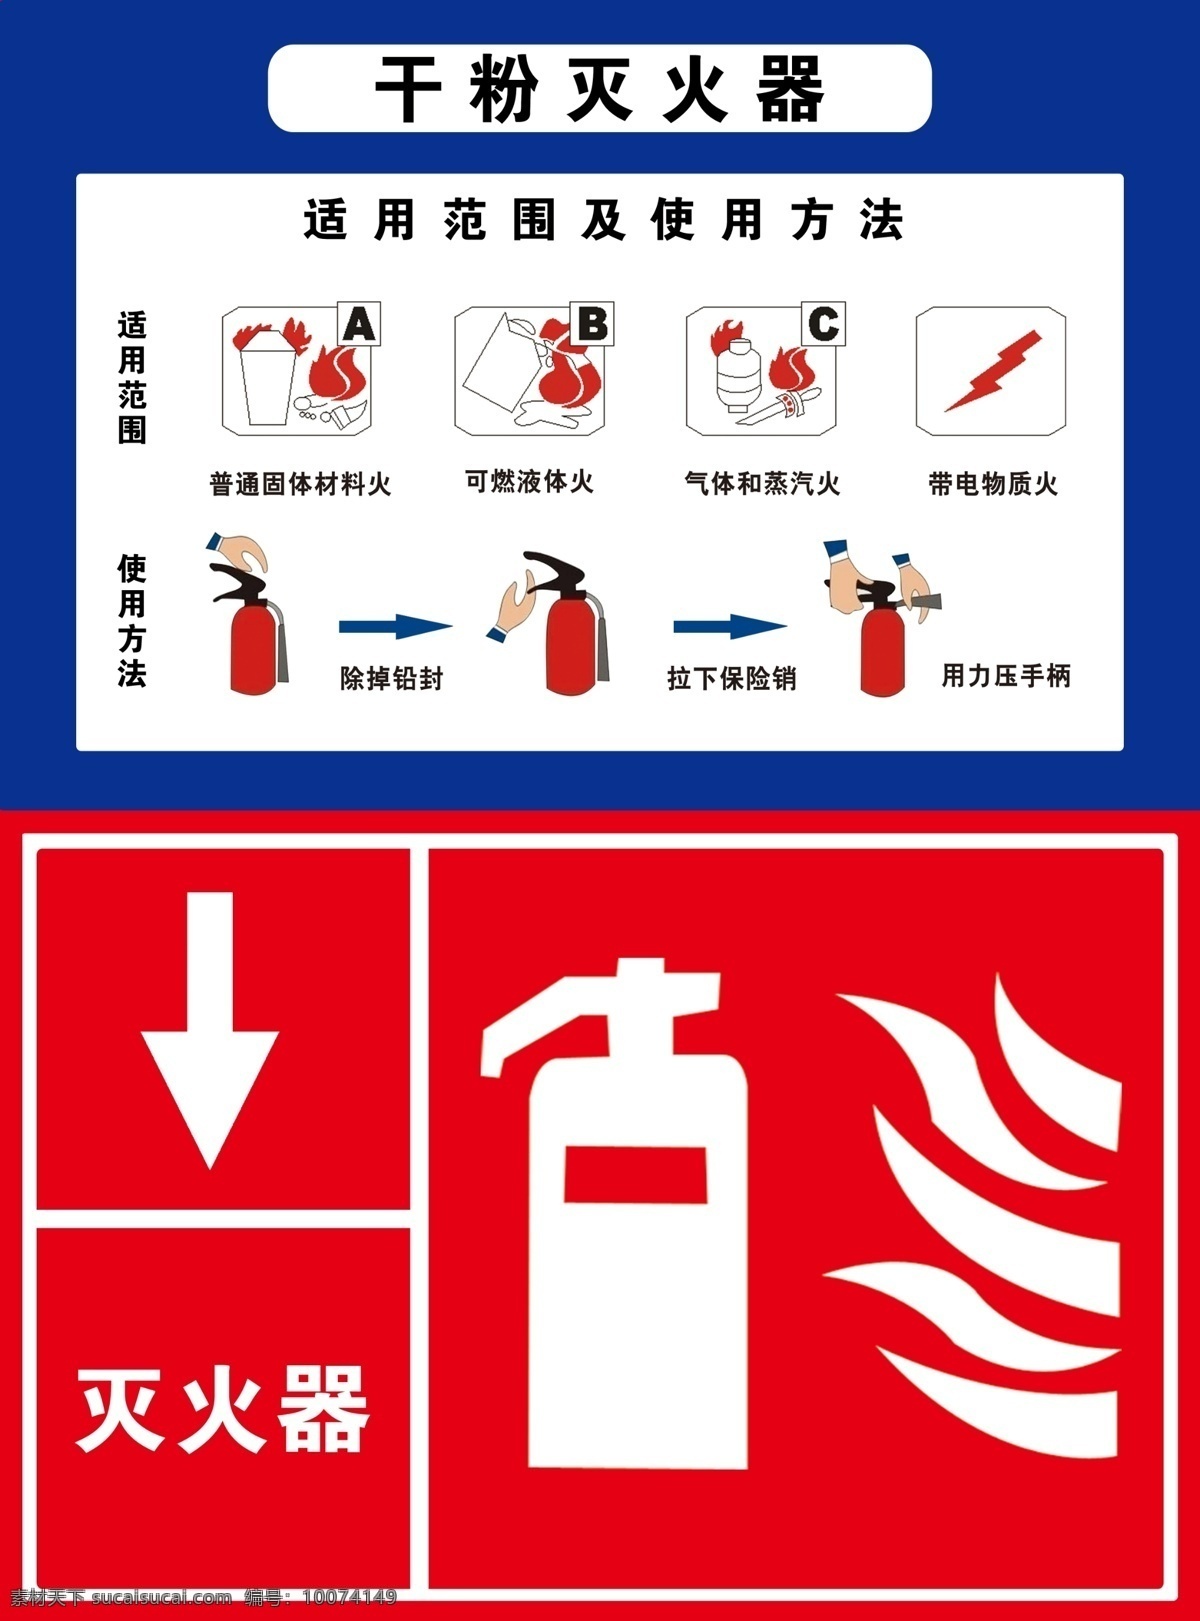 干粉灭火器 使用方法 灭火器示意 示意图 火警 火灾应急 分层